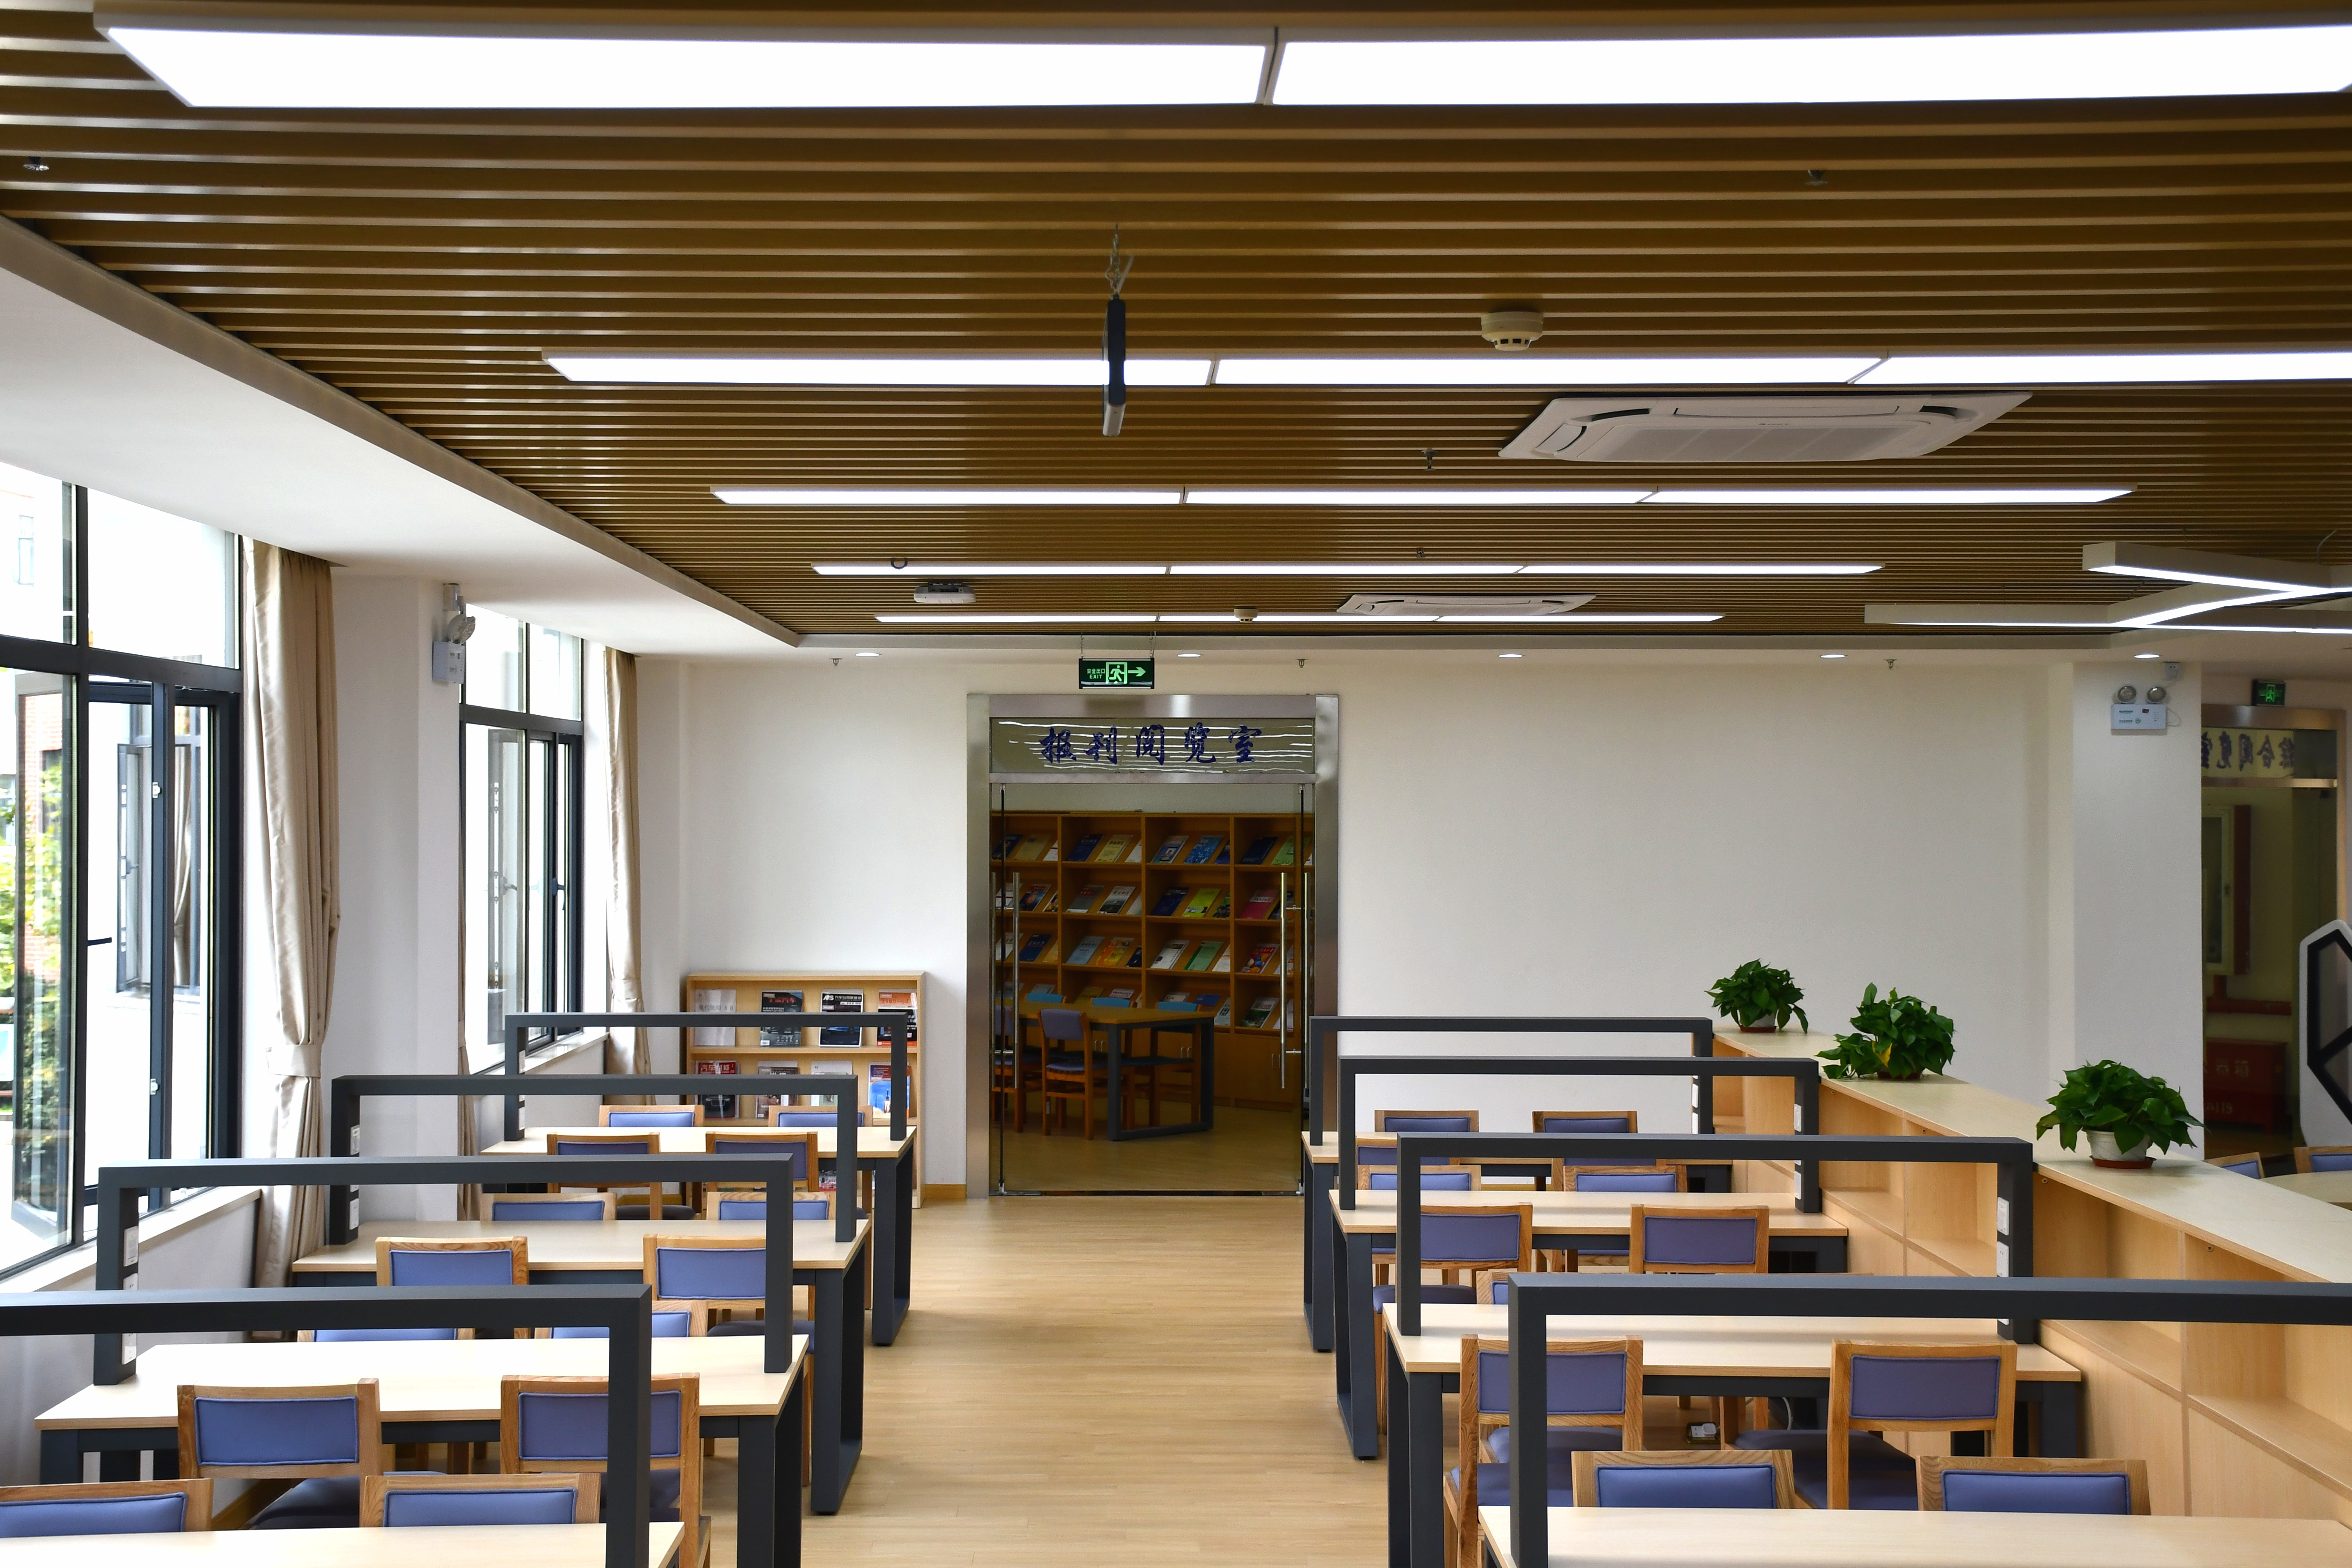 360个人图书馆阅览室图片